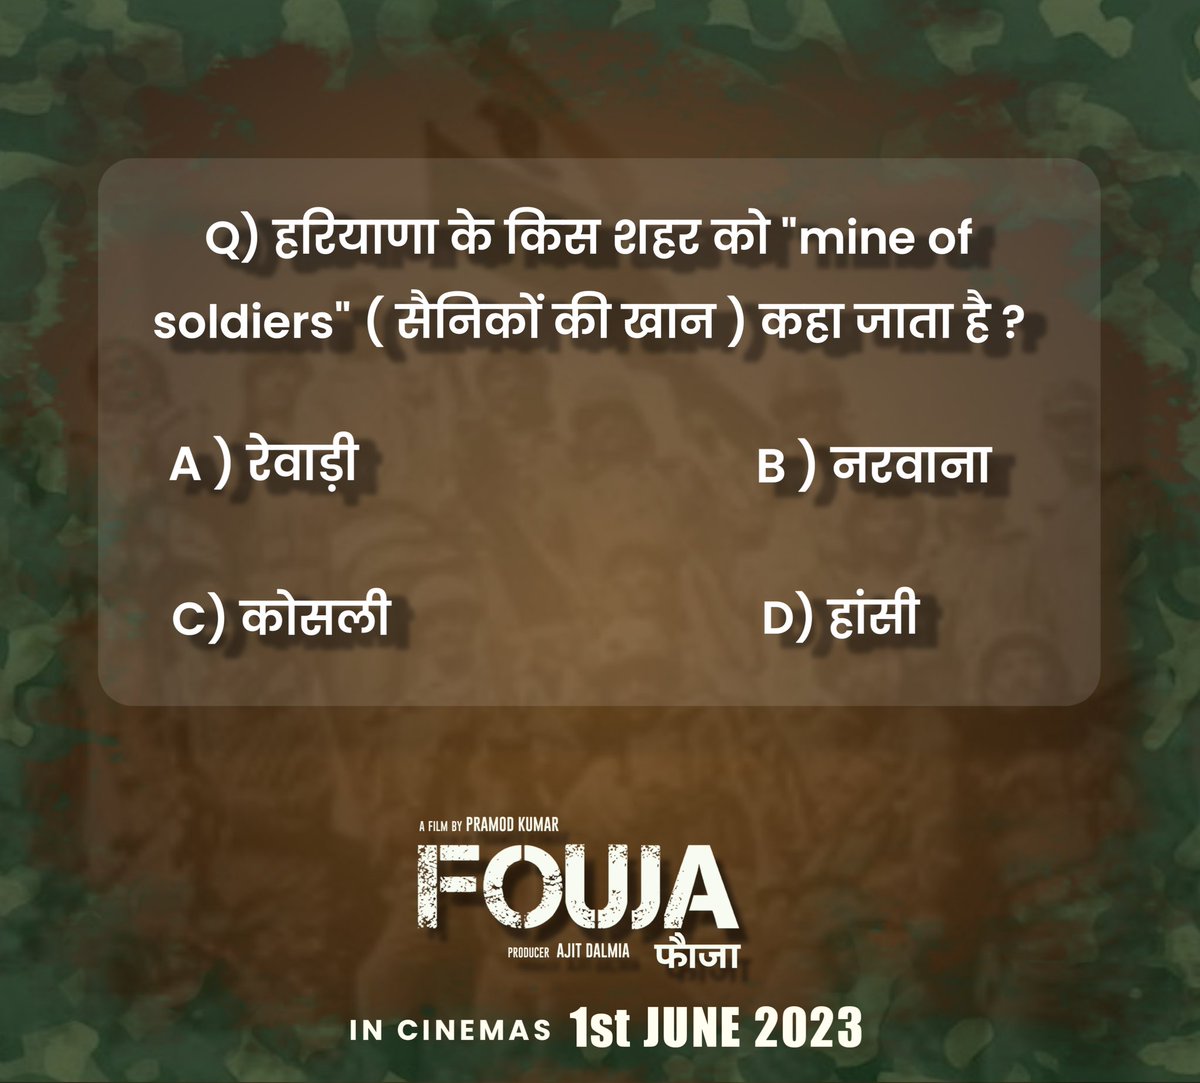 #fouja #posterreveal #gdbakshi #officialposter #foujathefilm #foujamovie #newrelease #1stjune #army #indianarmy